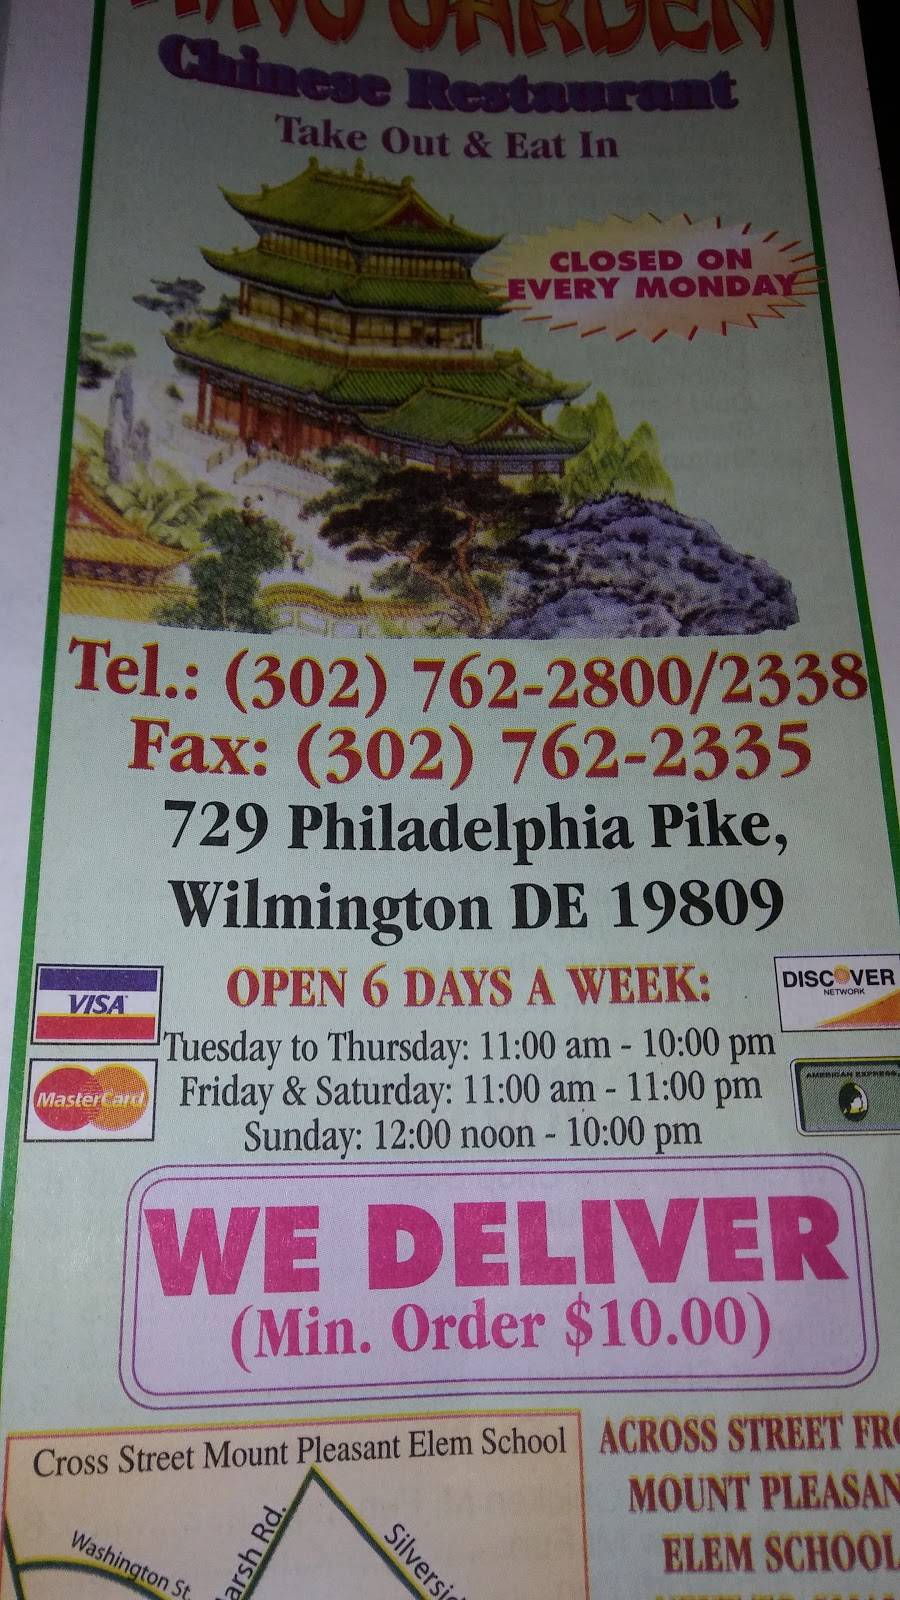 King Garden Restaurant 729 Philadelphia Pike Wilmington De